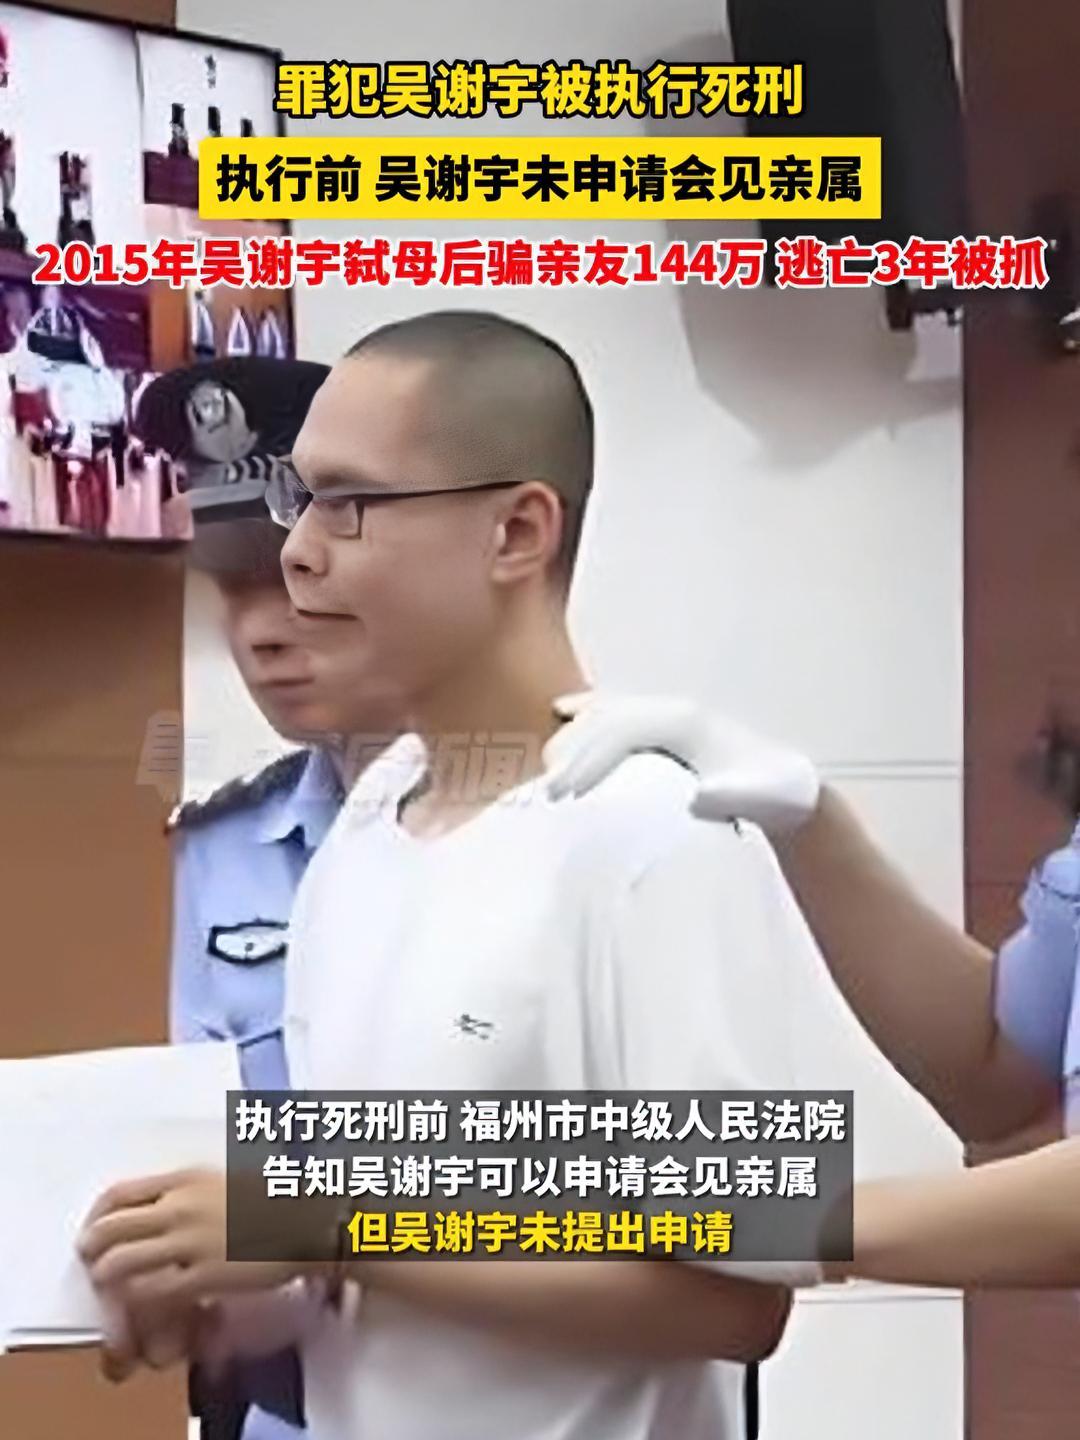 罪犯吴谢宇被执行死刑 2015年弑母后骗亲友144万 逃亡3年被抓(来源:九